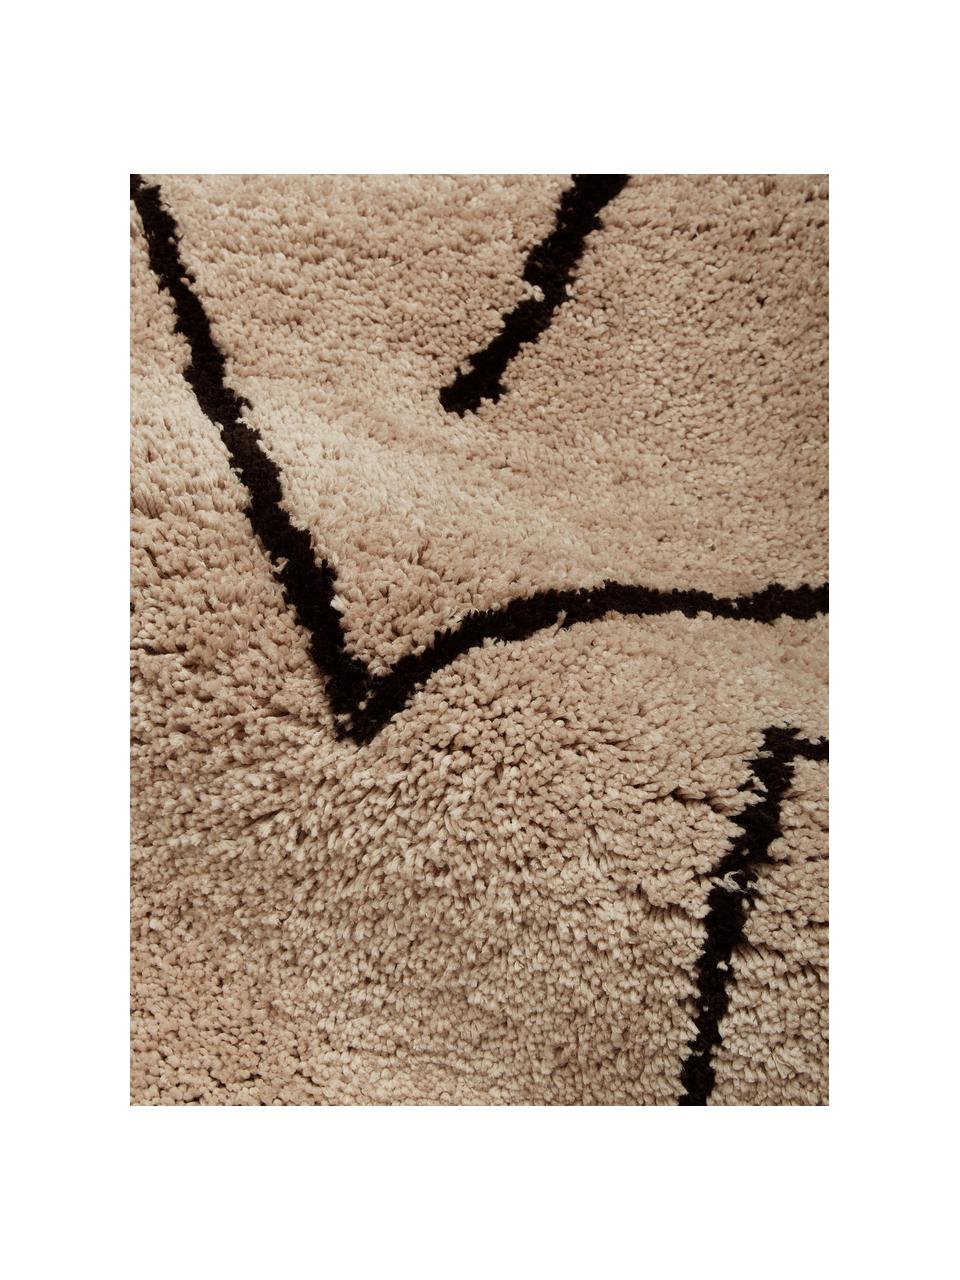 Runder Hochflor-Teppich Davin, handgetuftet, Flor: 100% Polyester-Mikrofaser, Beige, Schwarz, Ø 200 cm  (Grösse L)